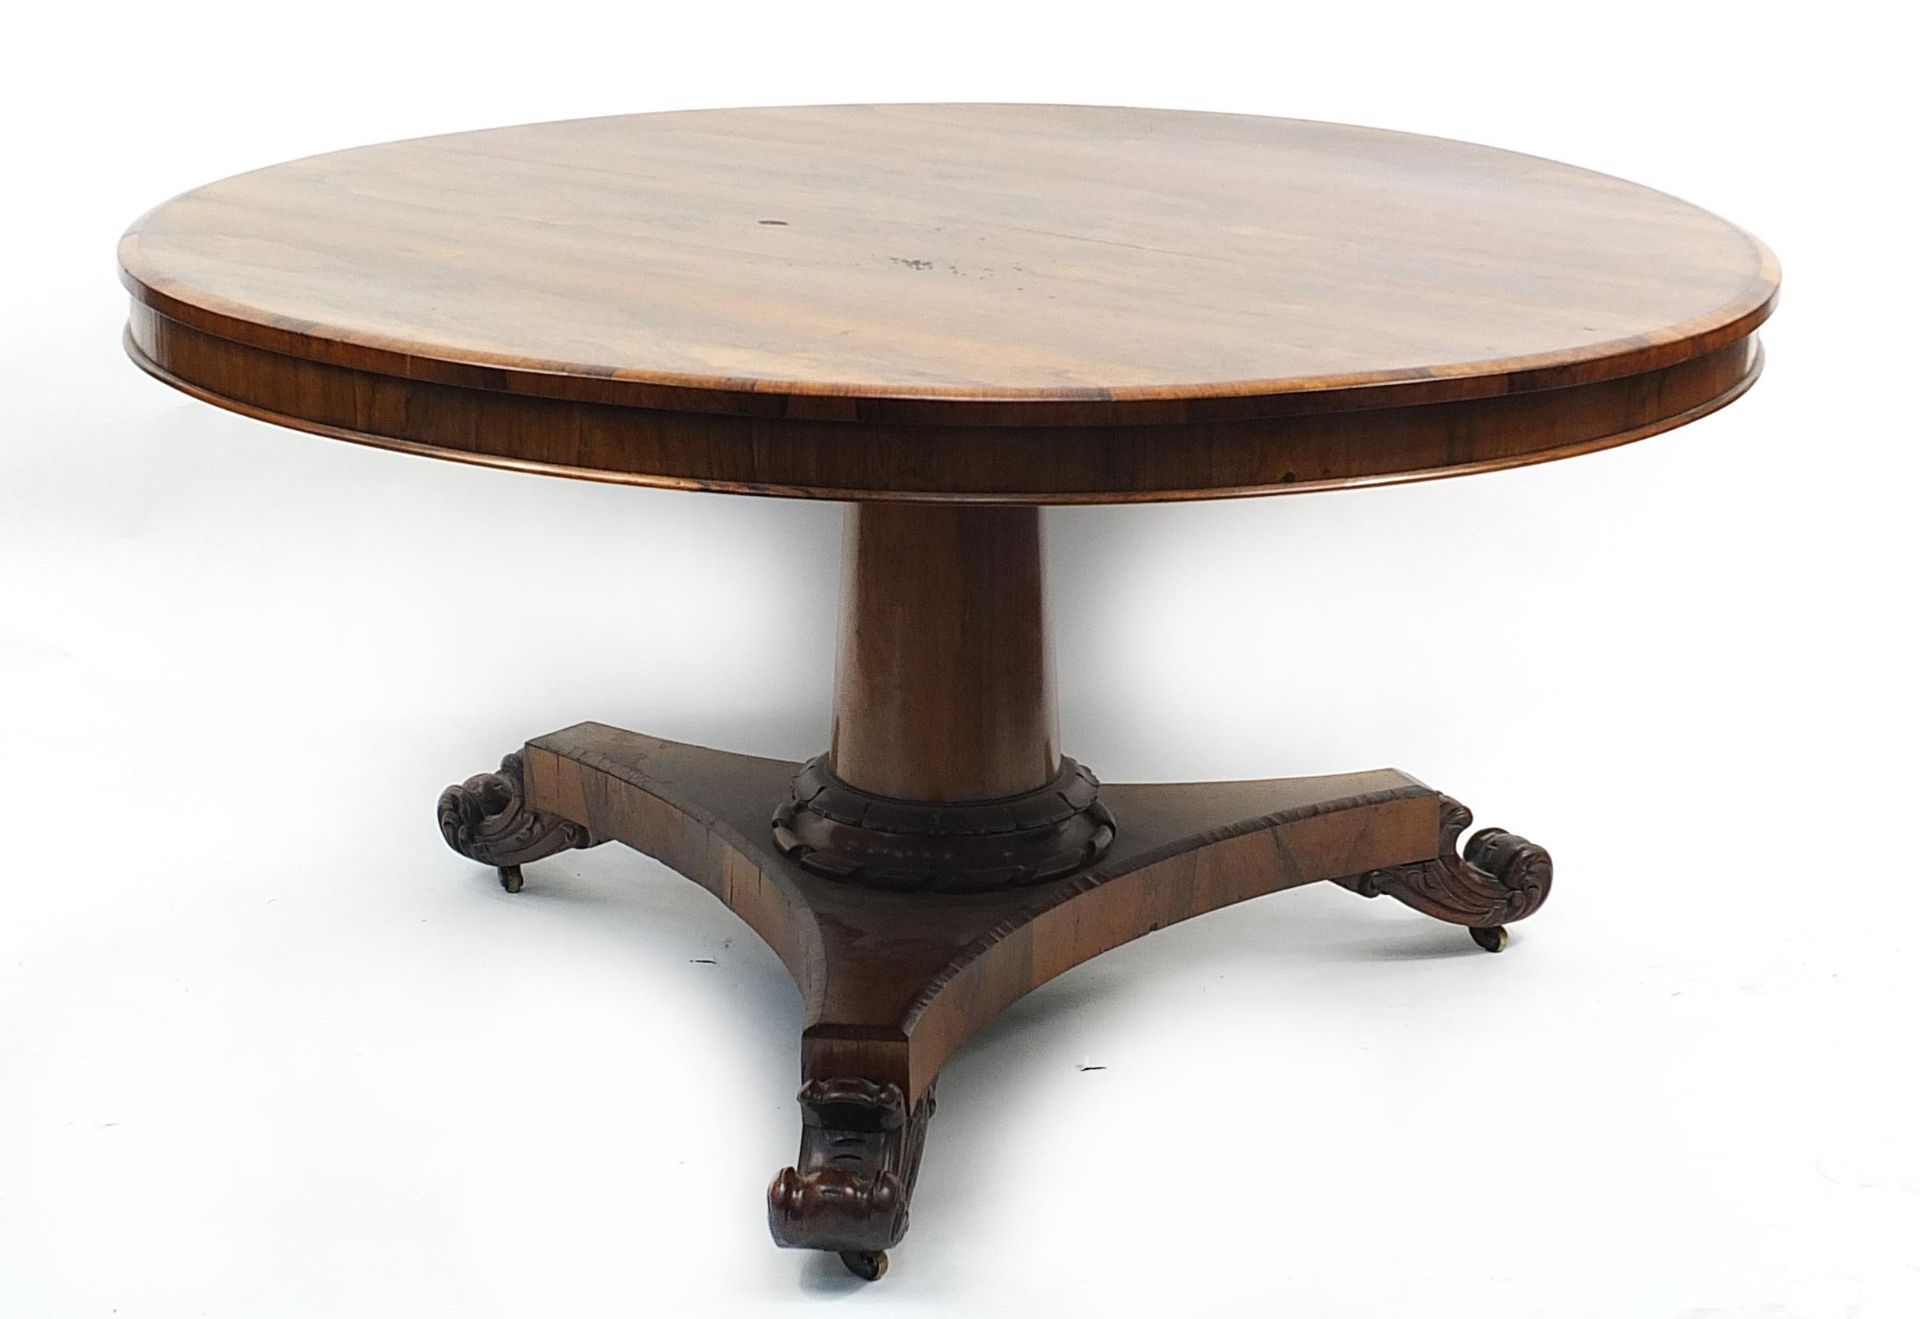 Victorian rosewood tilt top breakfast table, 70cm high x 136cm in diameter